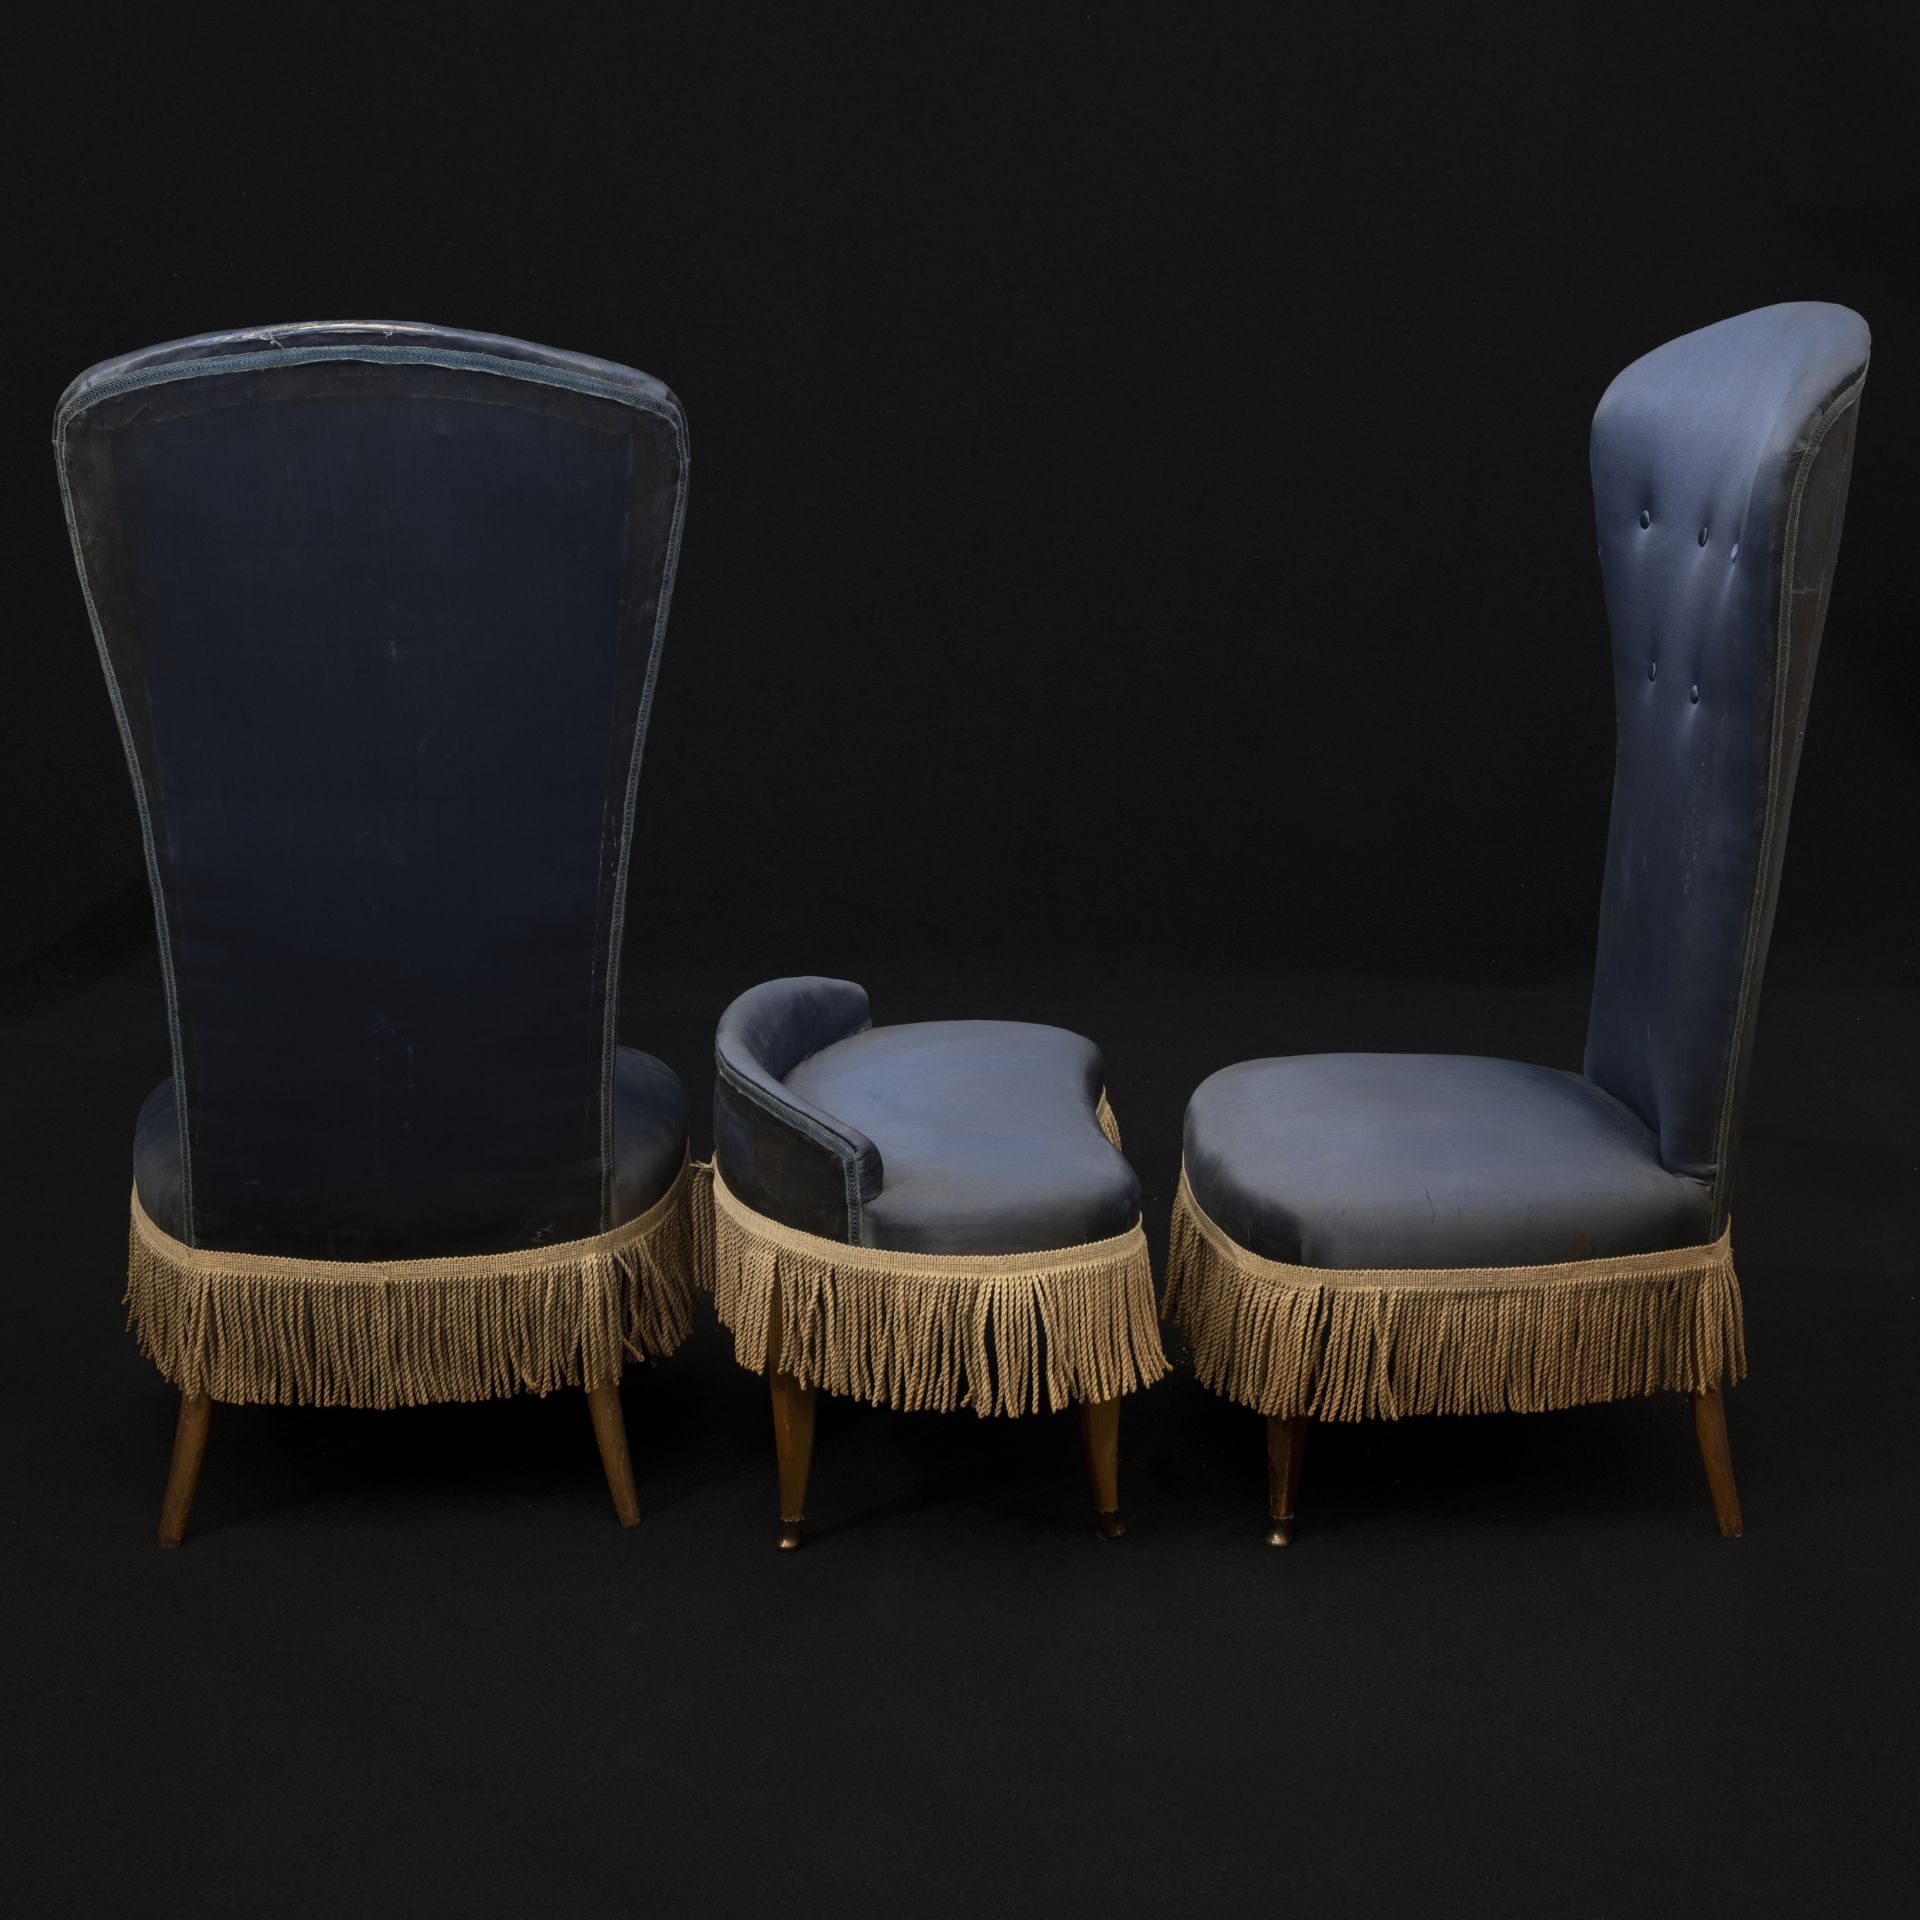 Coppia di sedie con alto schienale e pouf con piccolo schienale - Image 2 of 3